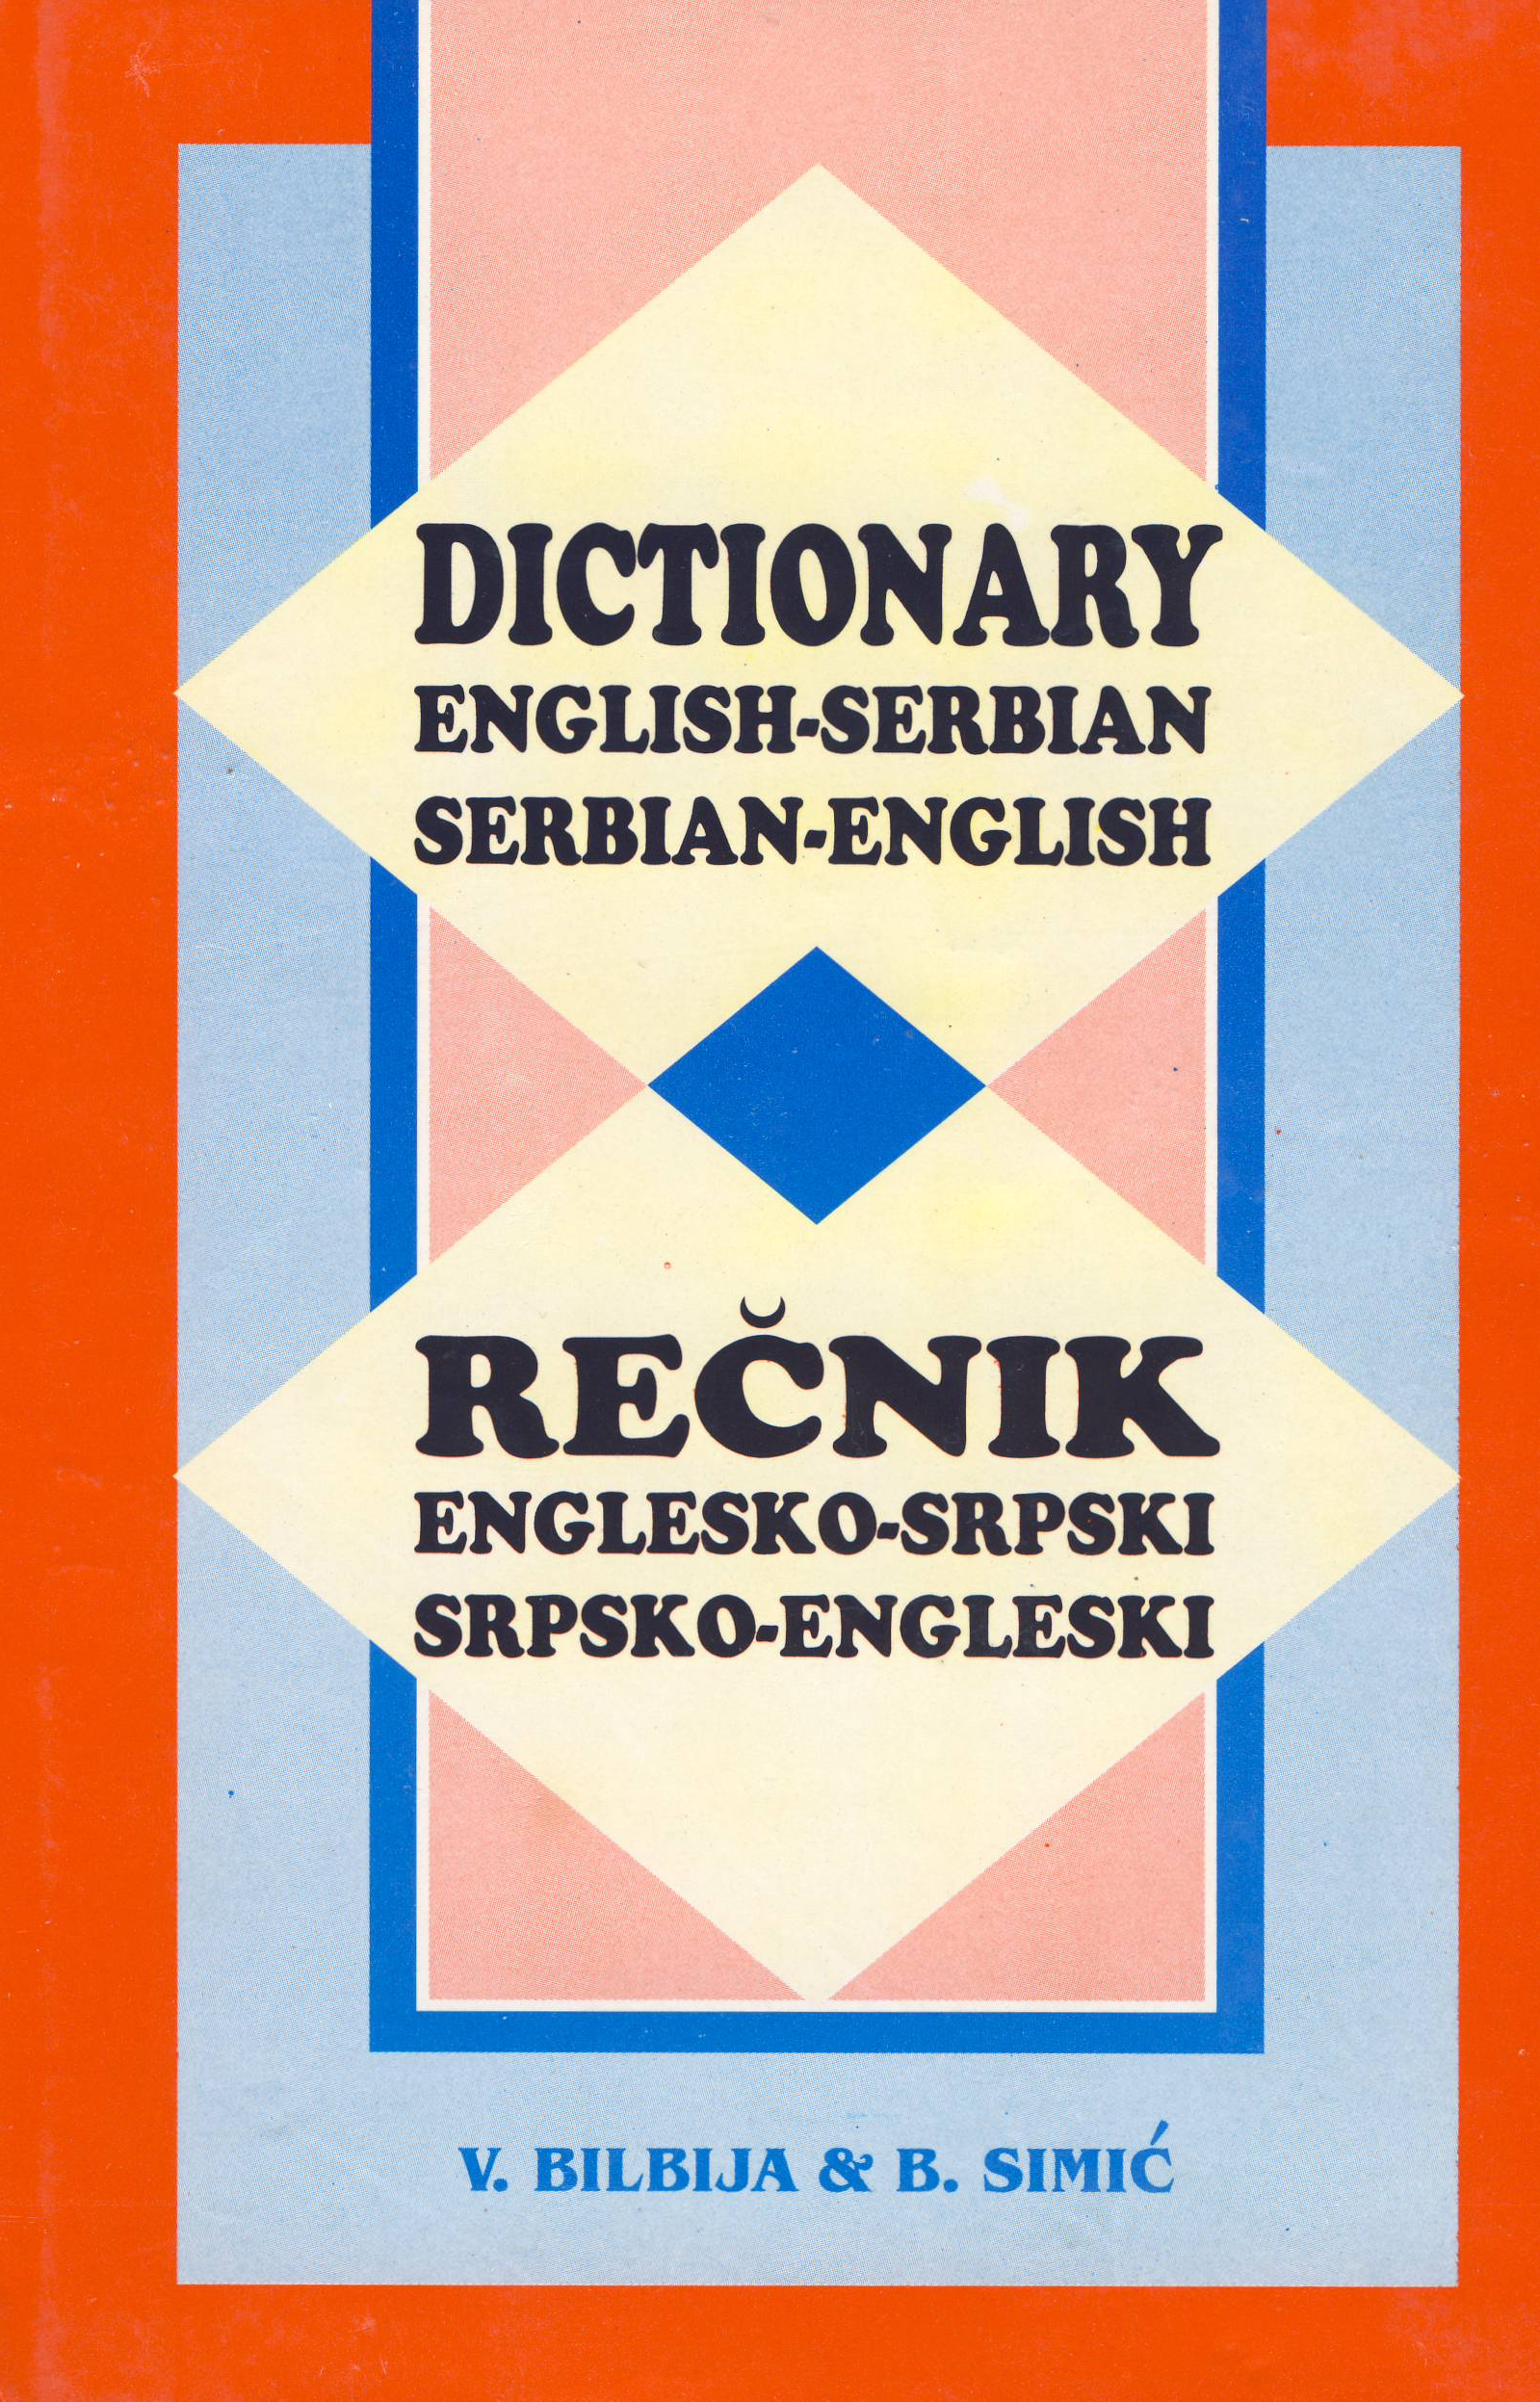 Serbian-English and English-Serbian Dictionary